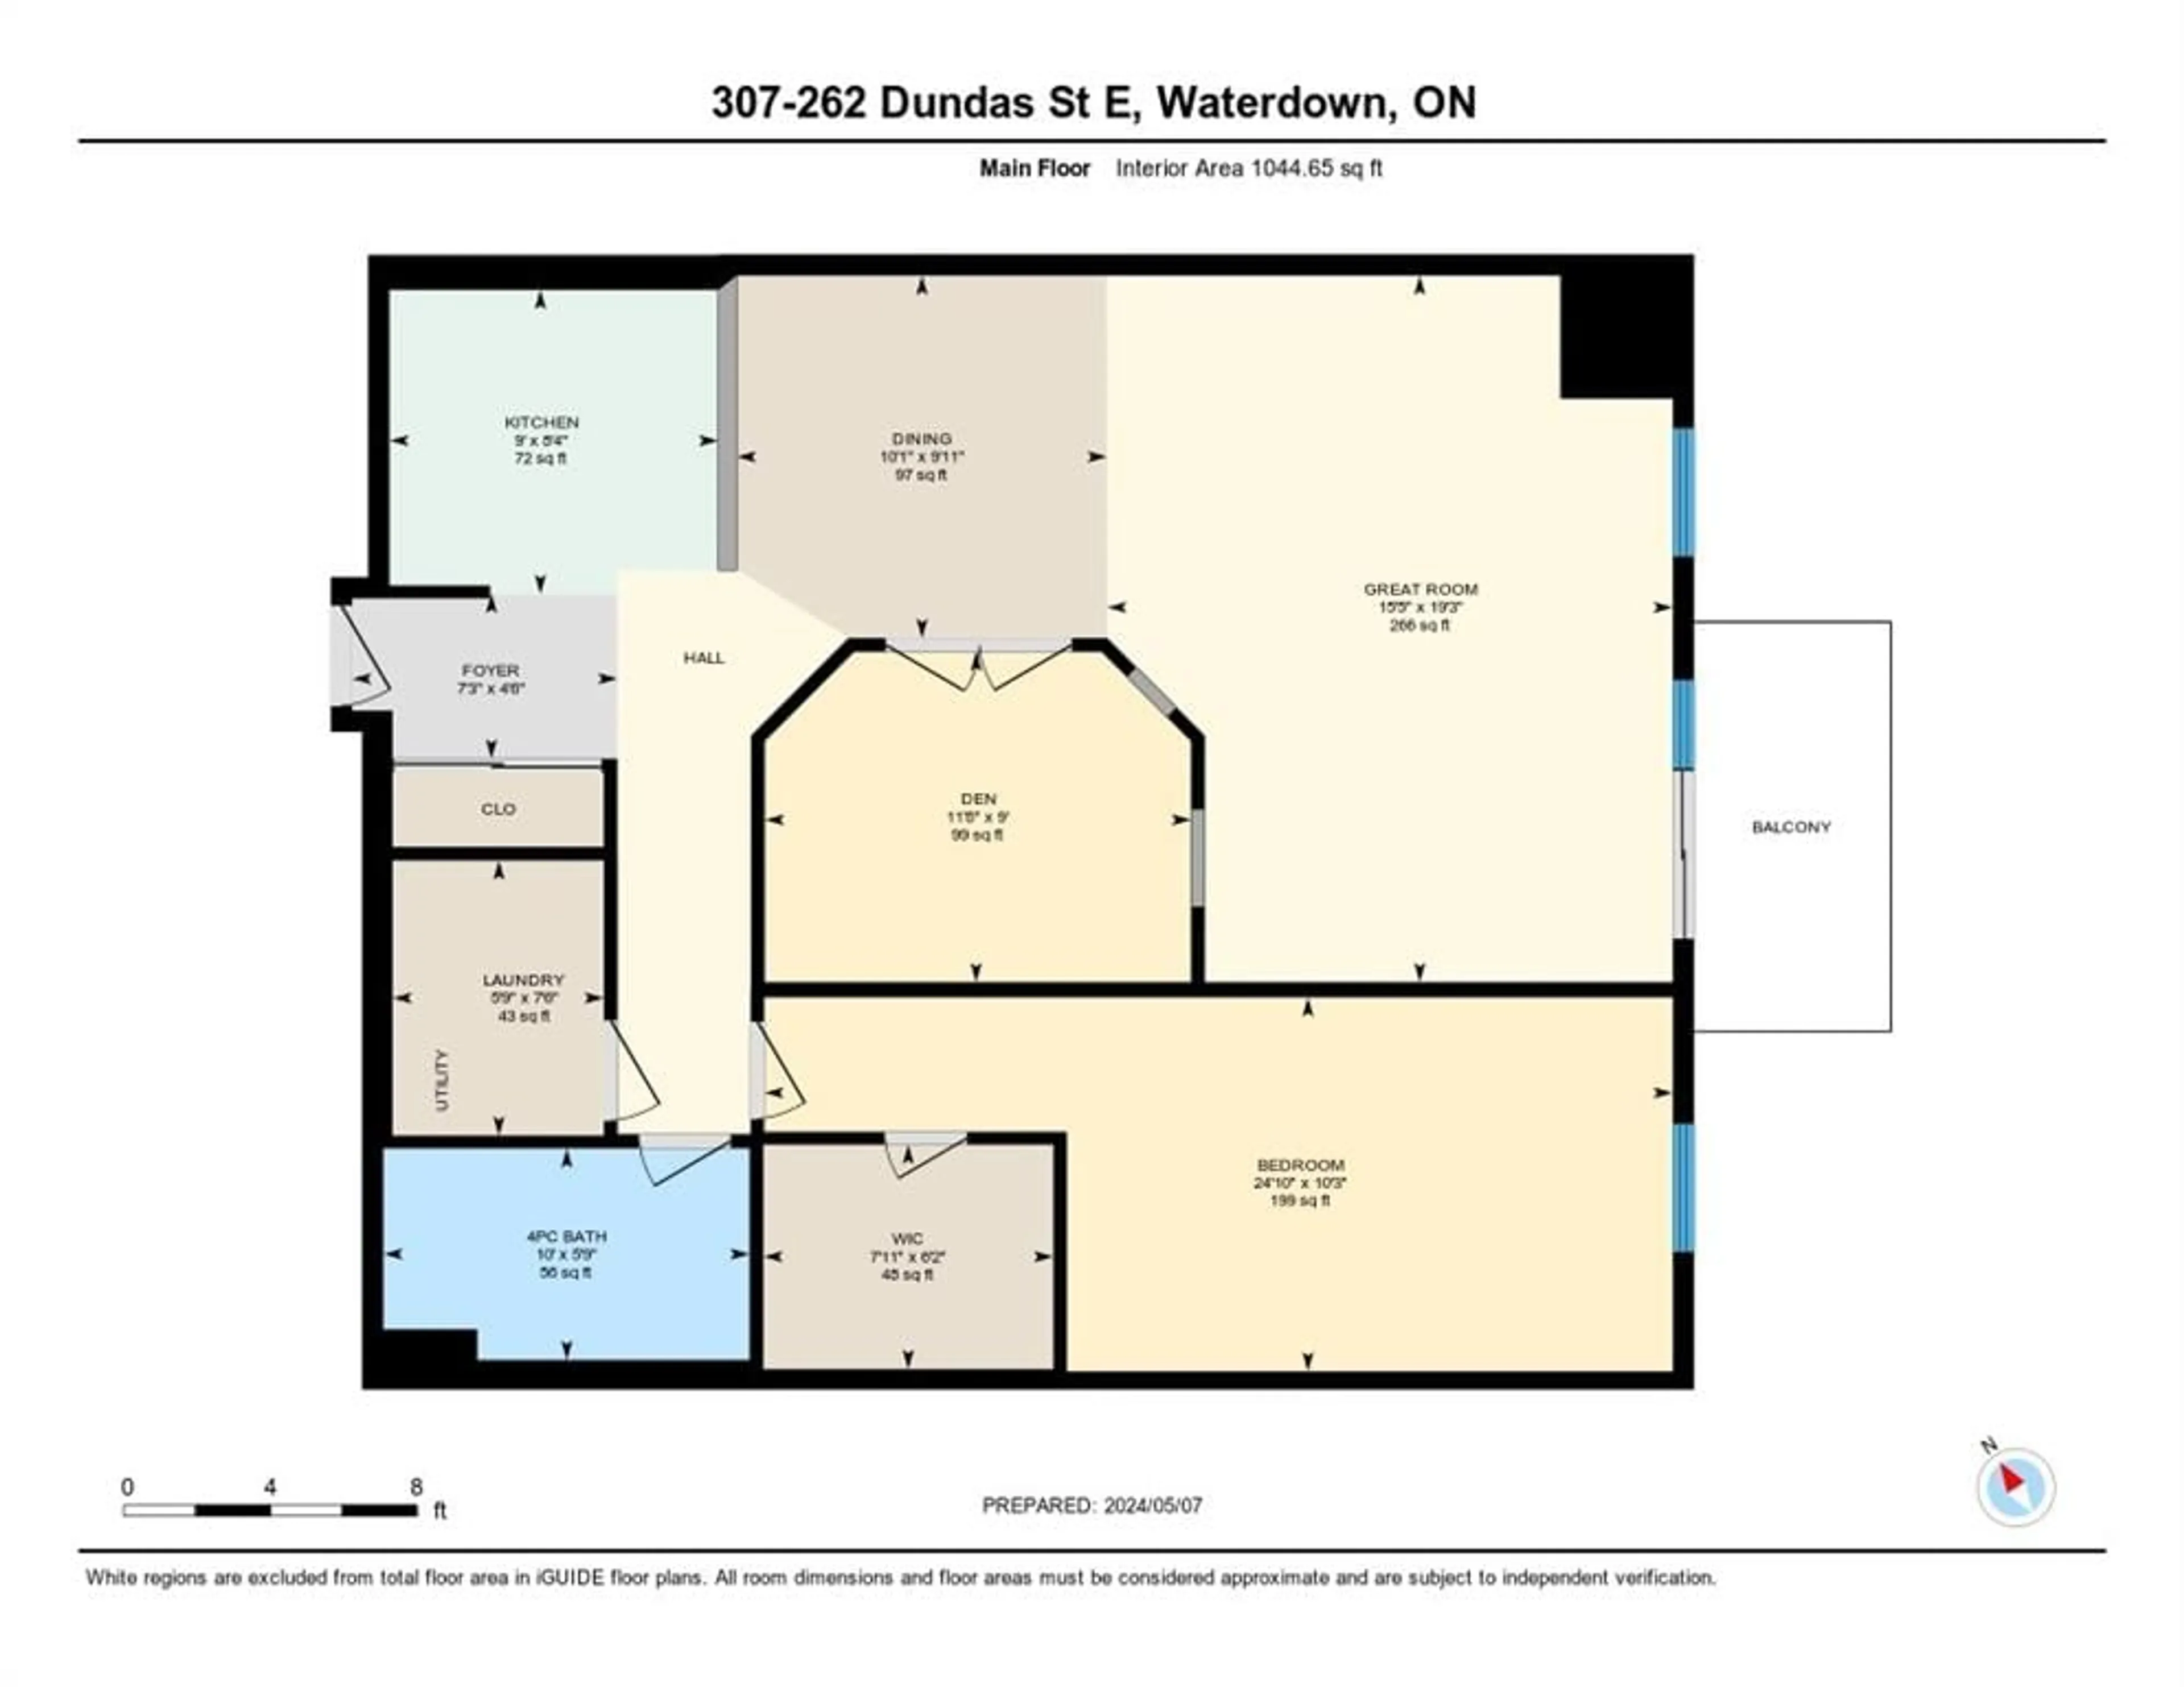 Floor plan for 262 Dundas St #307, Waterdown Ontario L8B 1A9